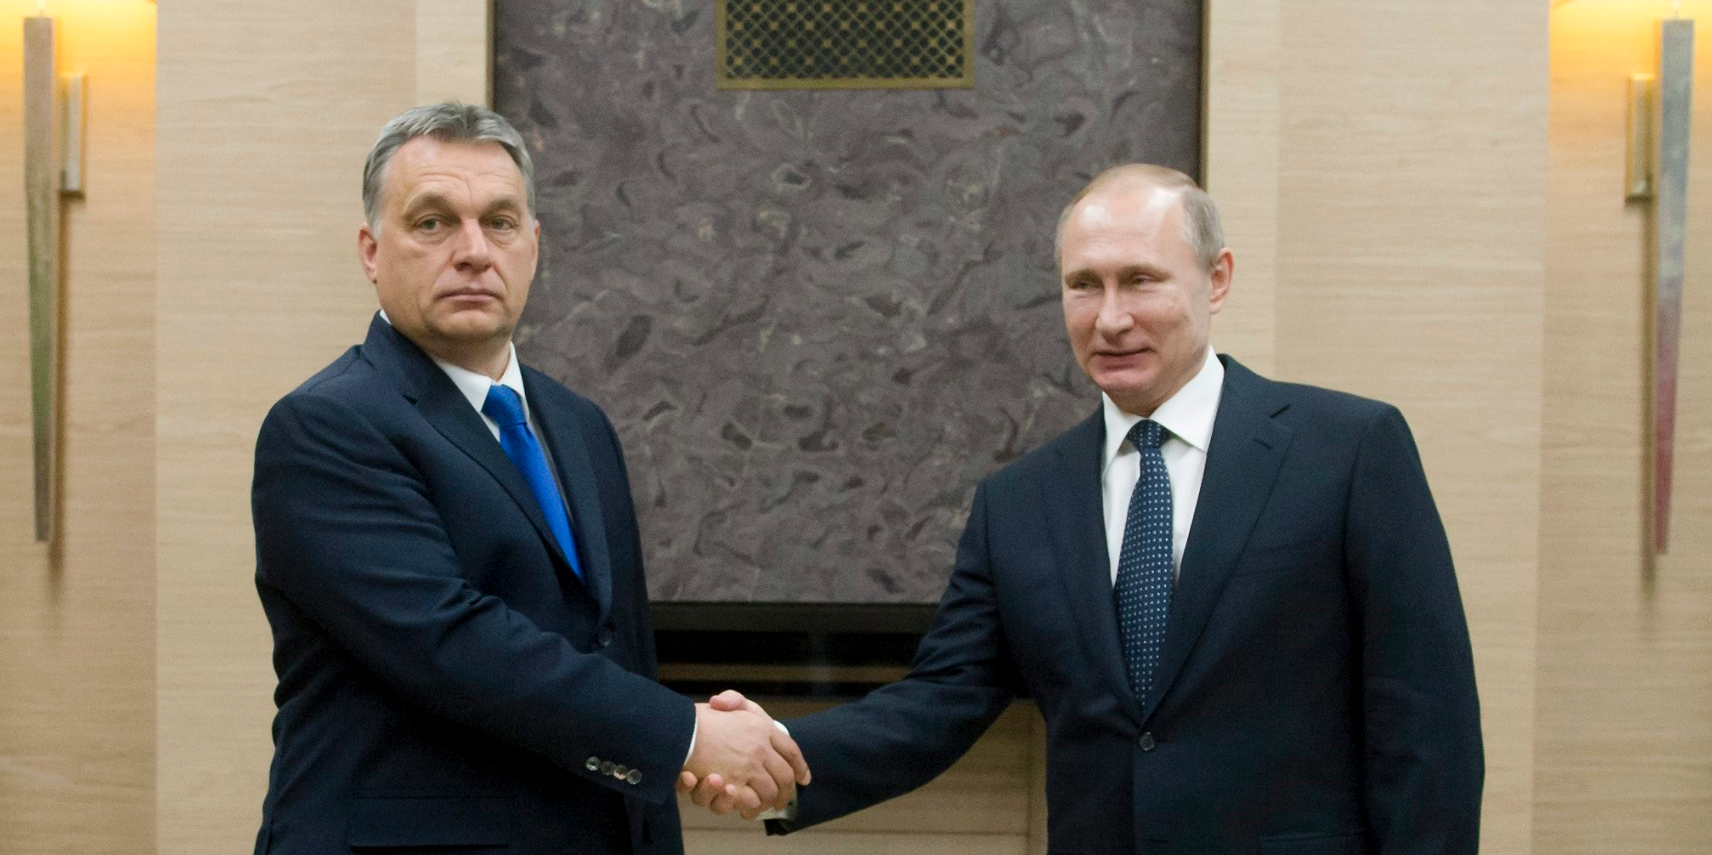 Vlagyimir Putyin még be sem tette a lábát Magyarországra, máris milliárdokat osztanak Orbánék a számára kedves célokra